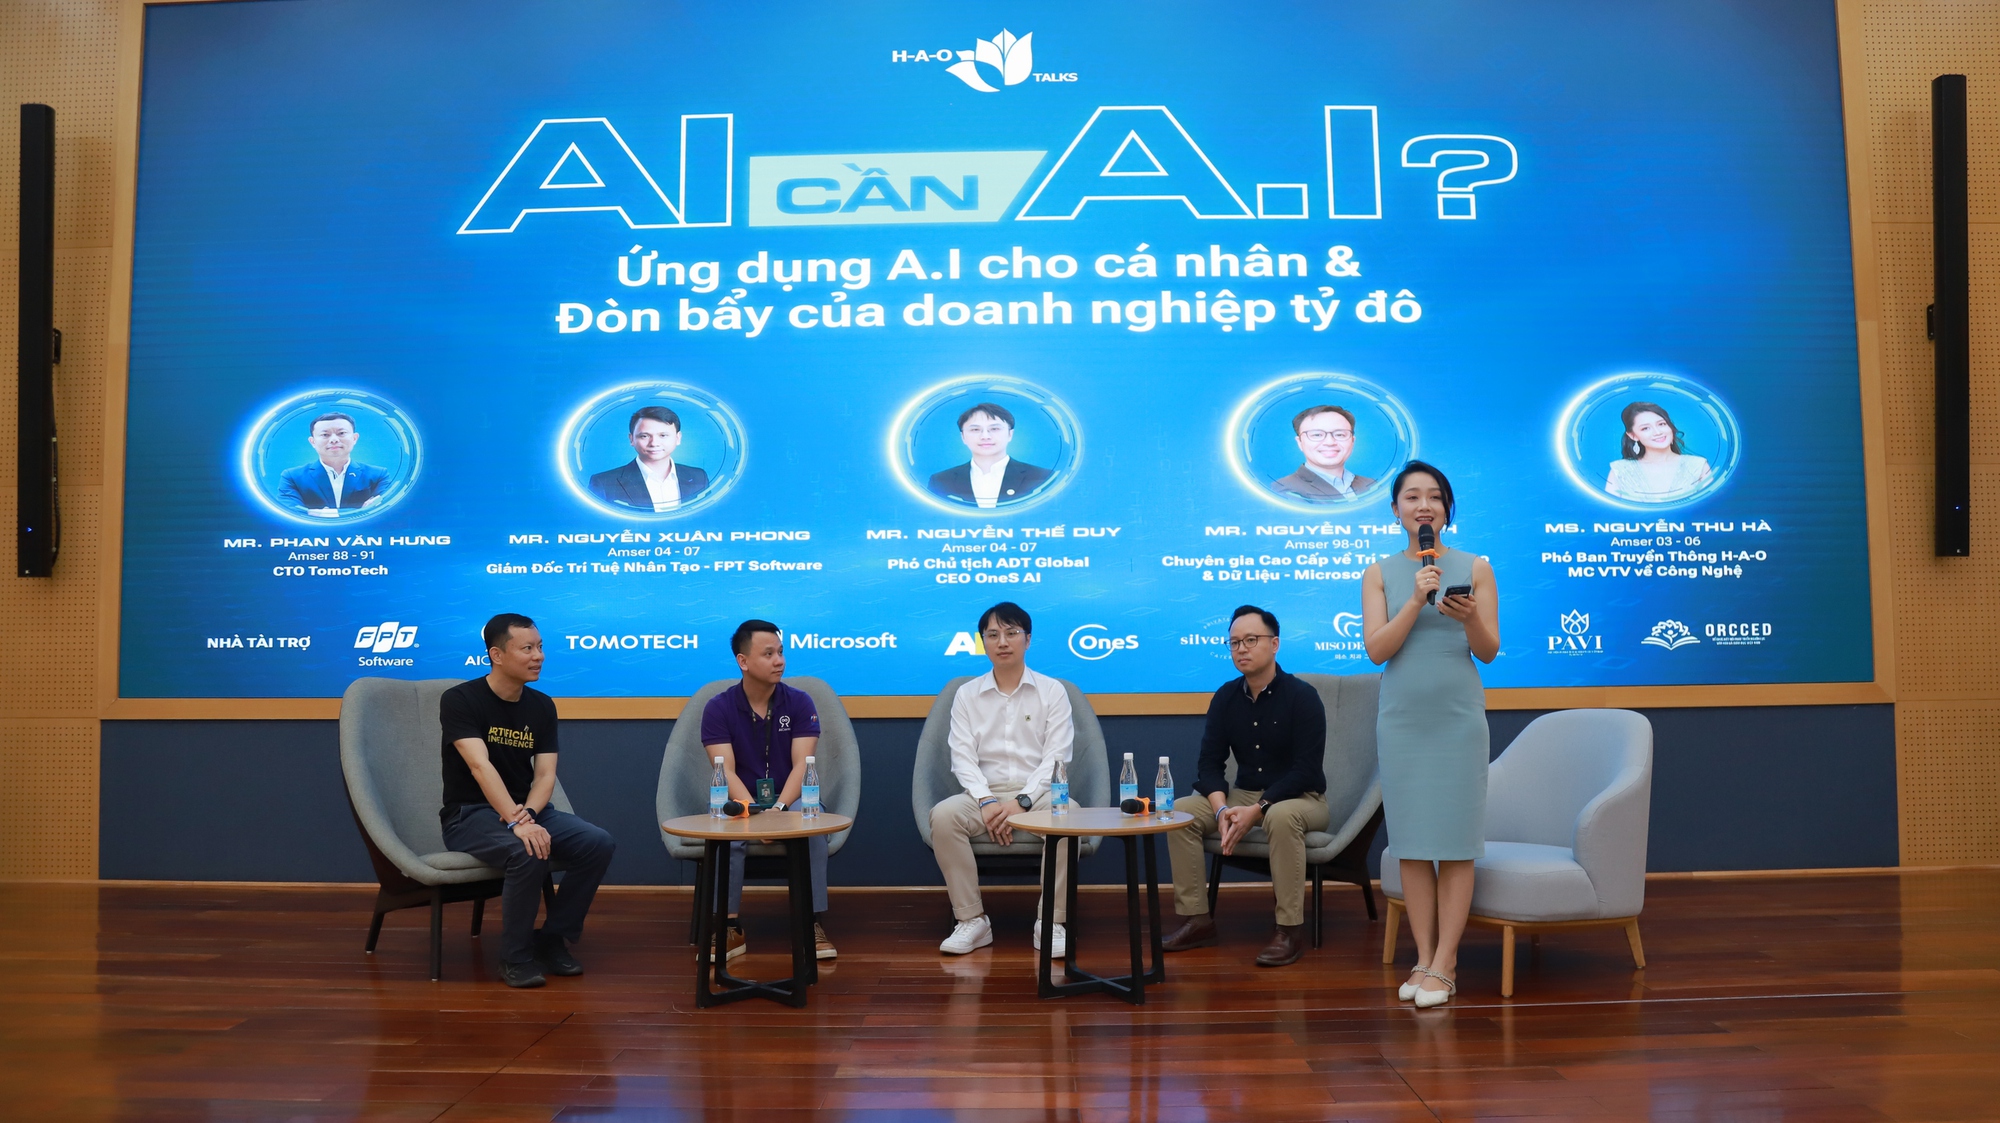 Ứng dụng AI, một doanh nghiệp Việt đạt doanh thu kỷ lục 1 tỷ USD- Ảnh 5.